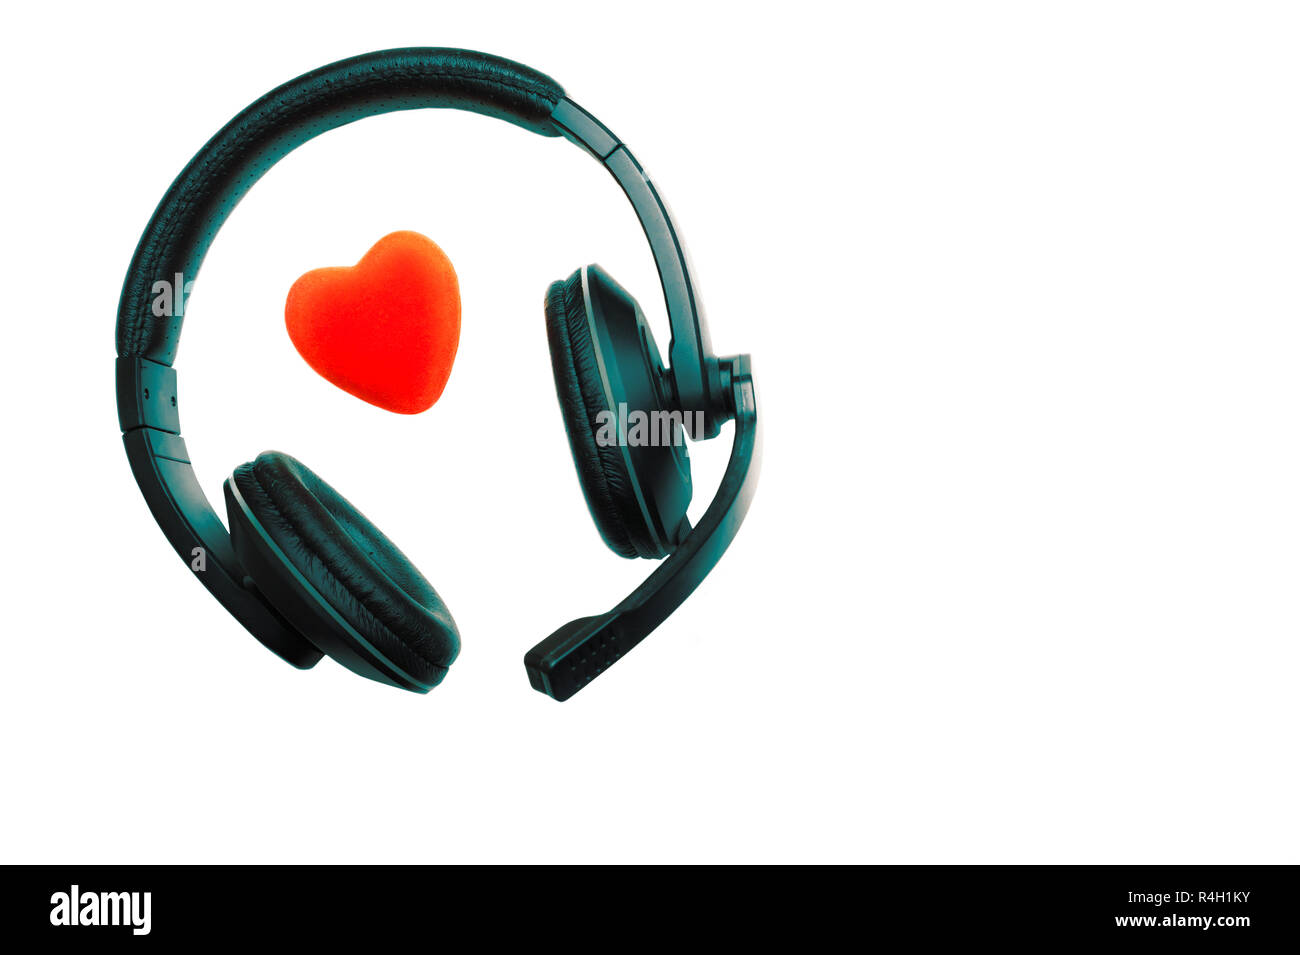 Nero e verde cuffie, cuffie con microfono e cuore rosso isolato su sfondo bianco. Call Center per il supporto tecnico, amore, il giorno di San Valentino, Foto Stock